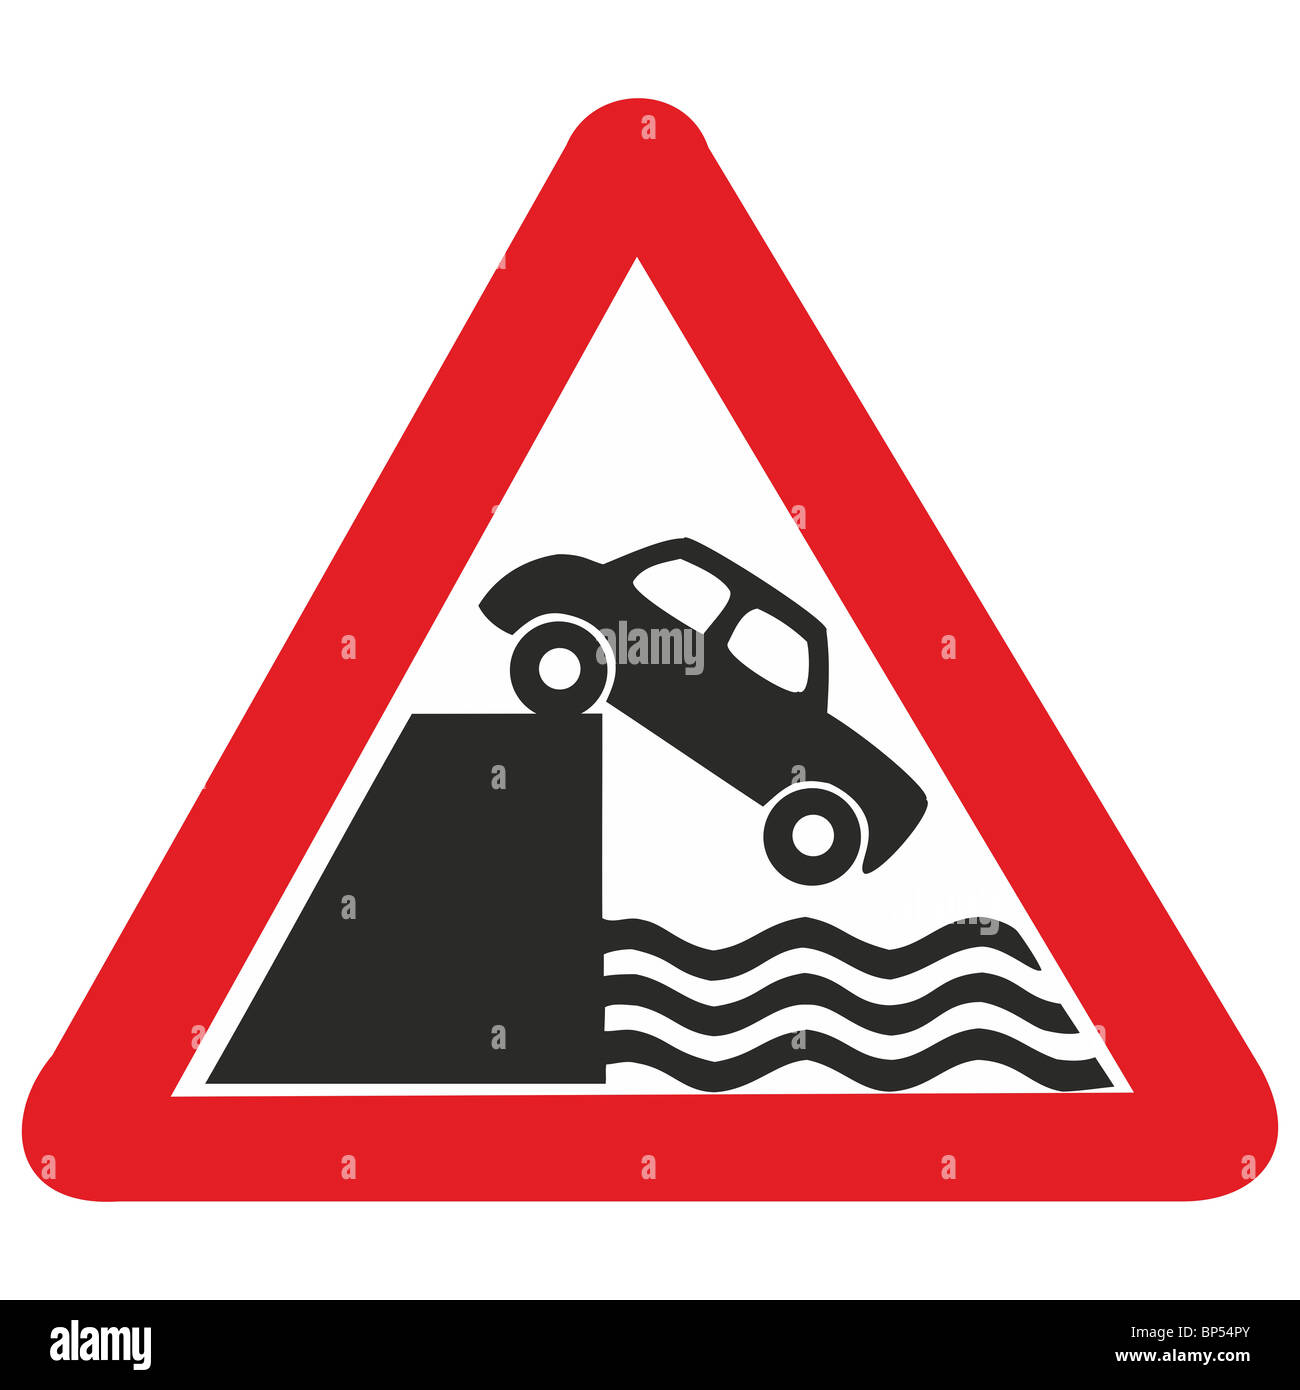 UK Zeichen Straßenauto fallen in Wasser gefährlichen Abfall Meer Fluss Canal Road umzäunt unbewacht Unfall Risiko Ofdrowning voraus Stockfoto